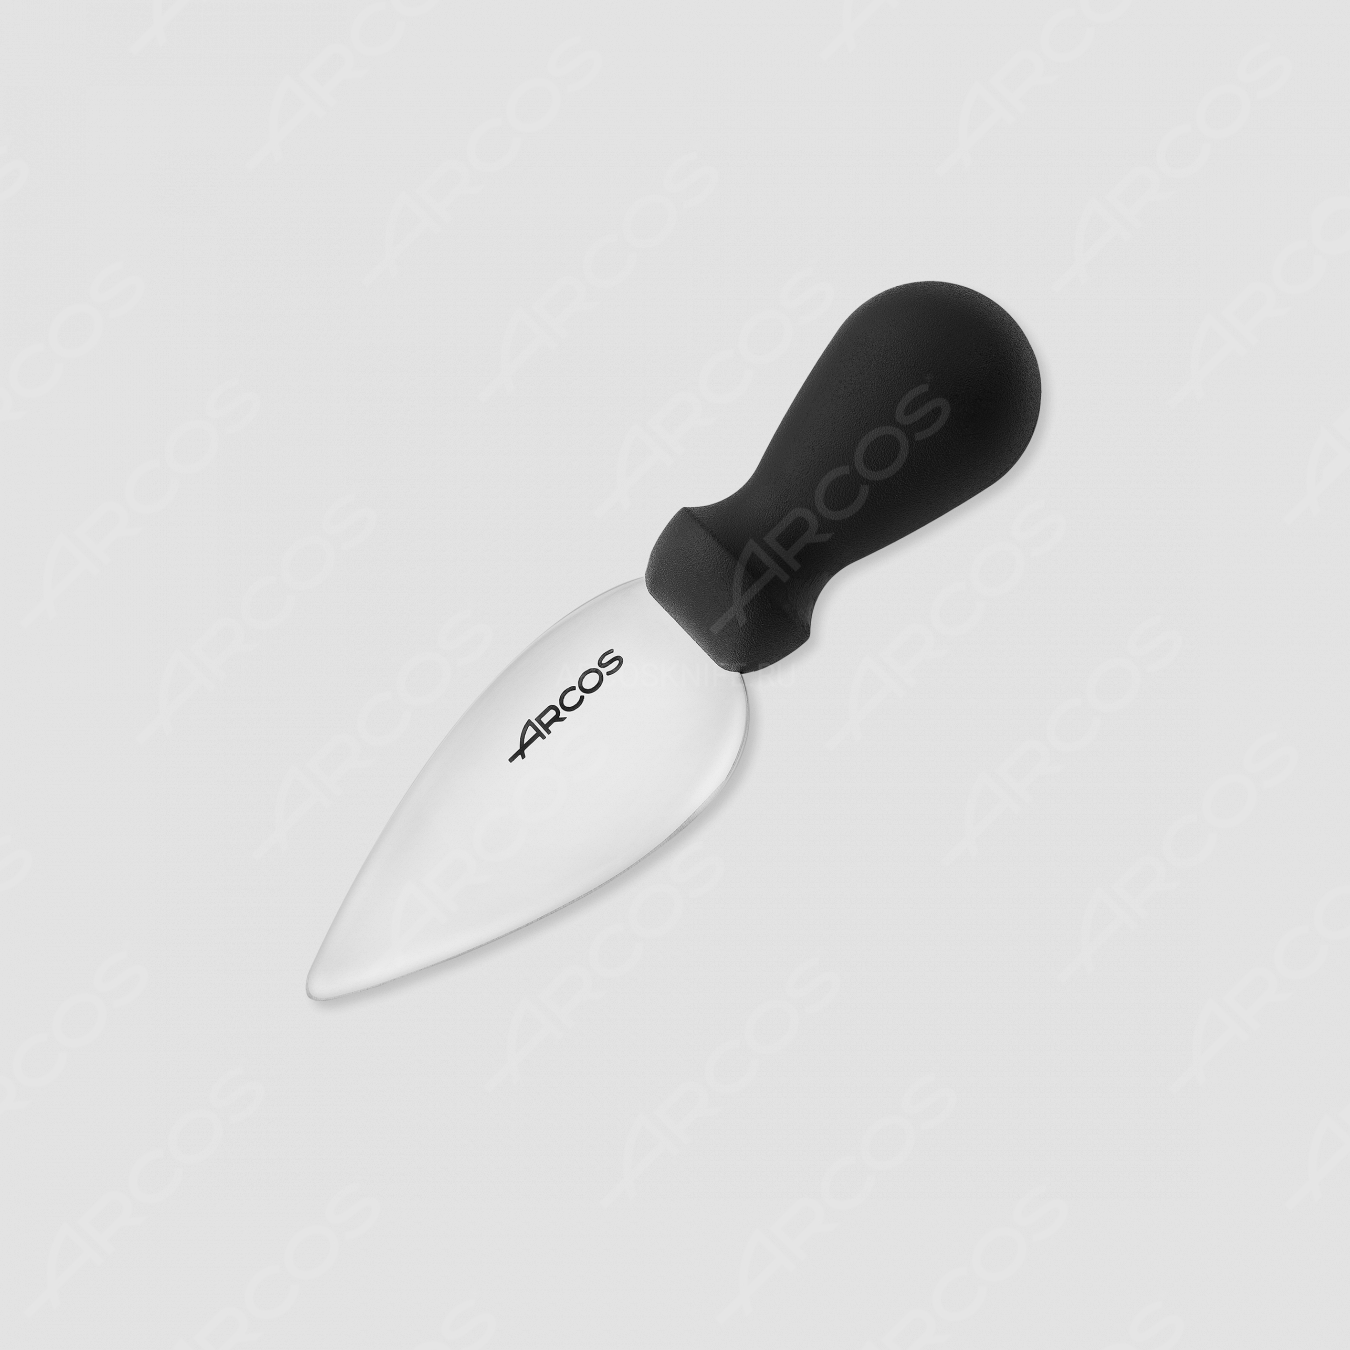 Нож для сыра пармезан, 11 см, серия Profesionales, ARCOS, Испания